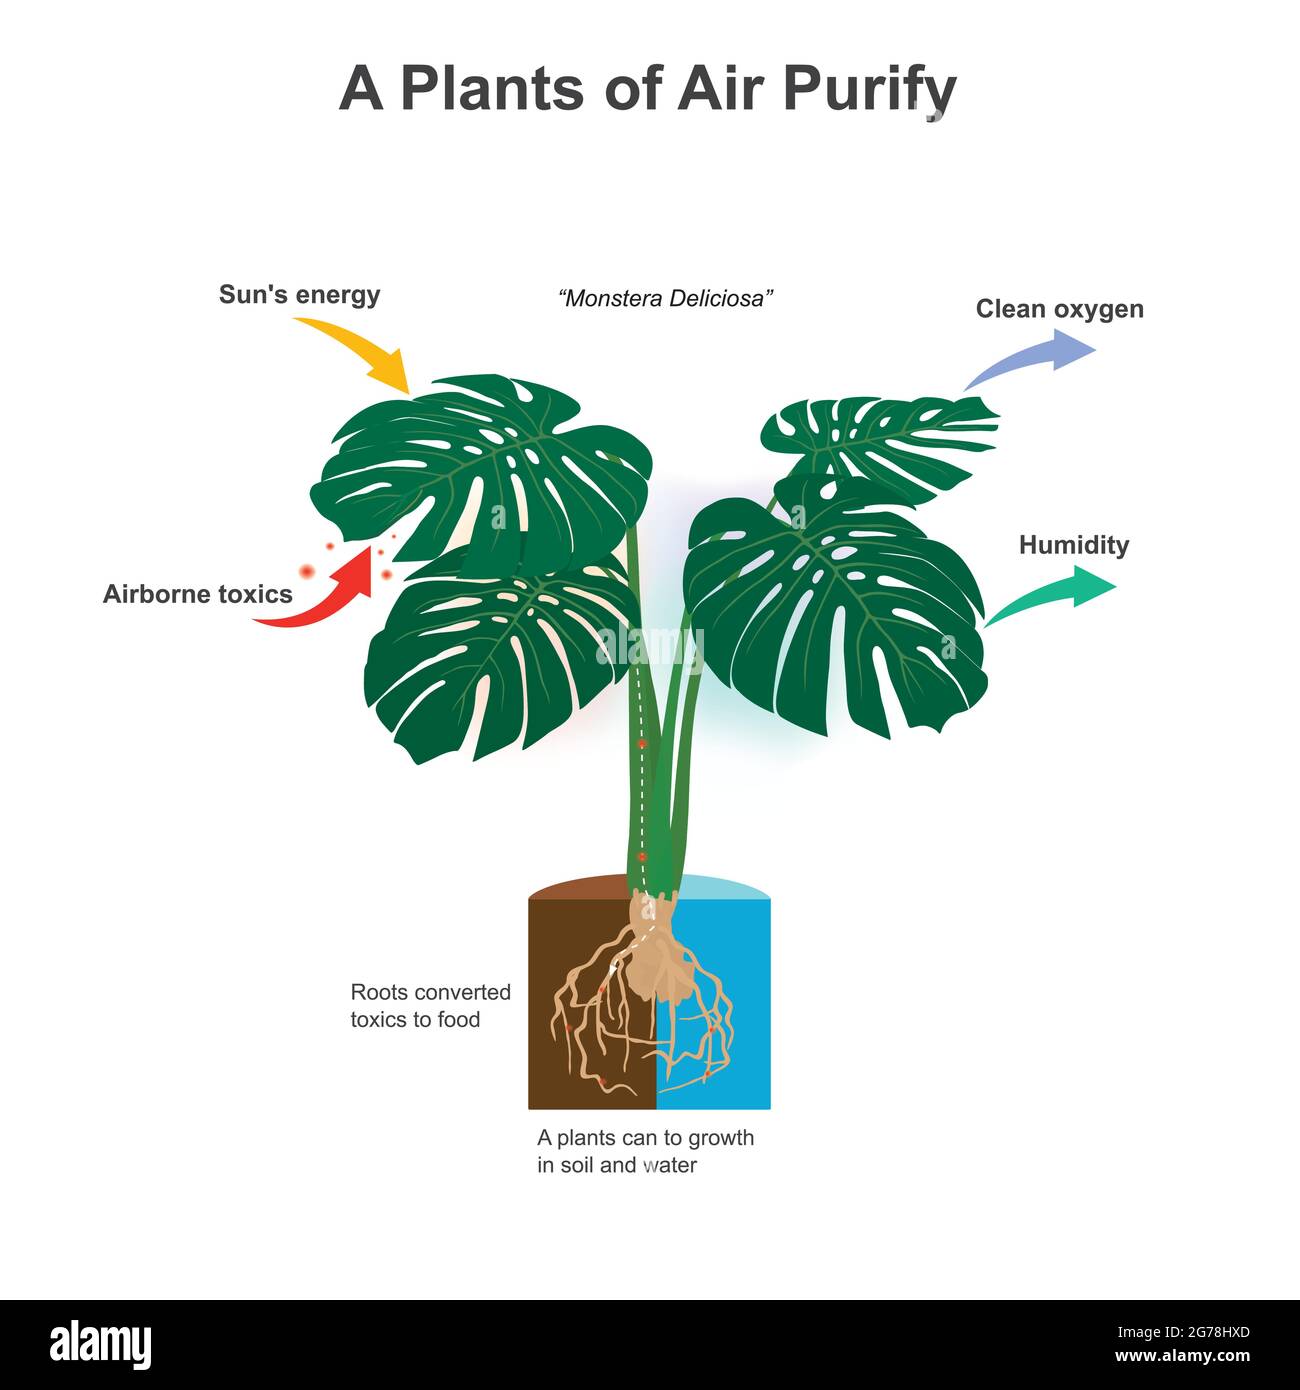 Una Purificador de Plantas de Aire. Ilustración que muestra sorprendente de plantas que puede una raíz convertido tóxicos en alimentos nutrientes para el crecimiento. Ilustración del Vector